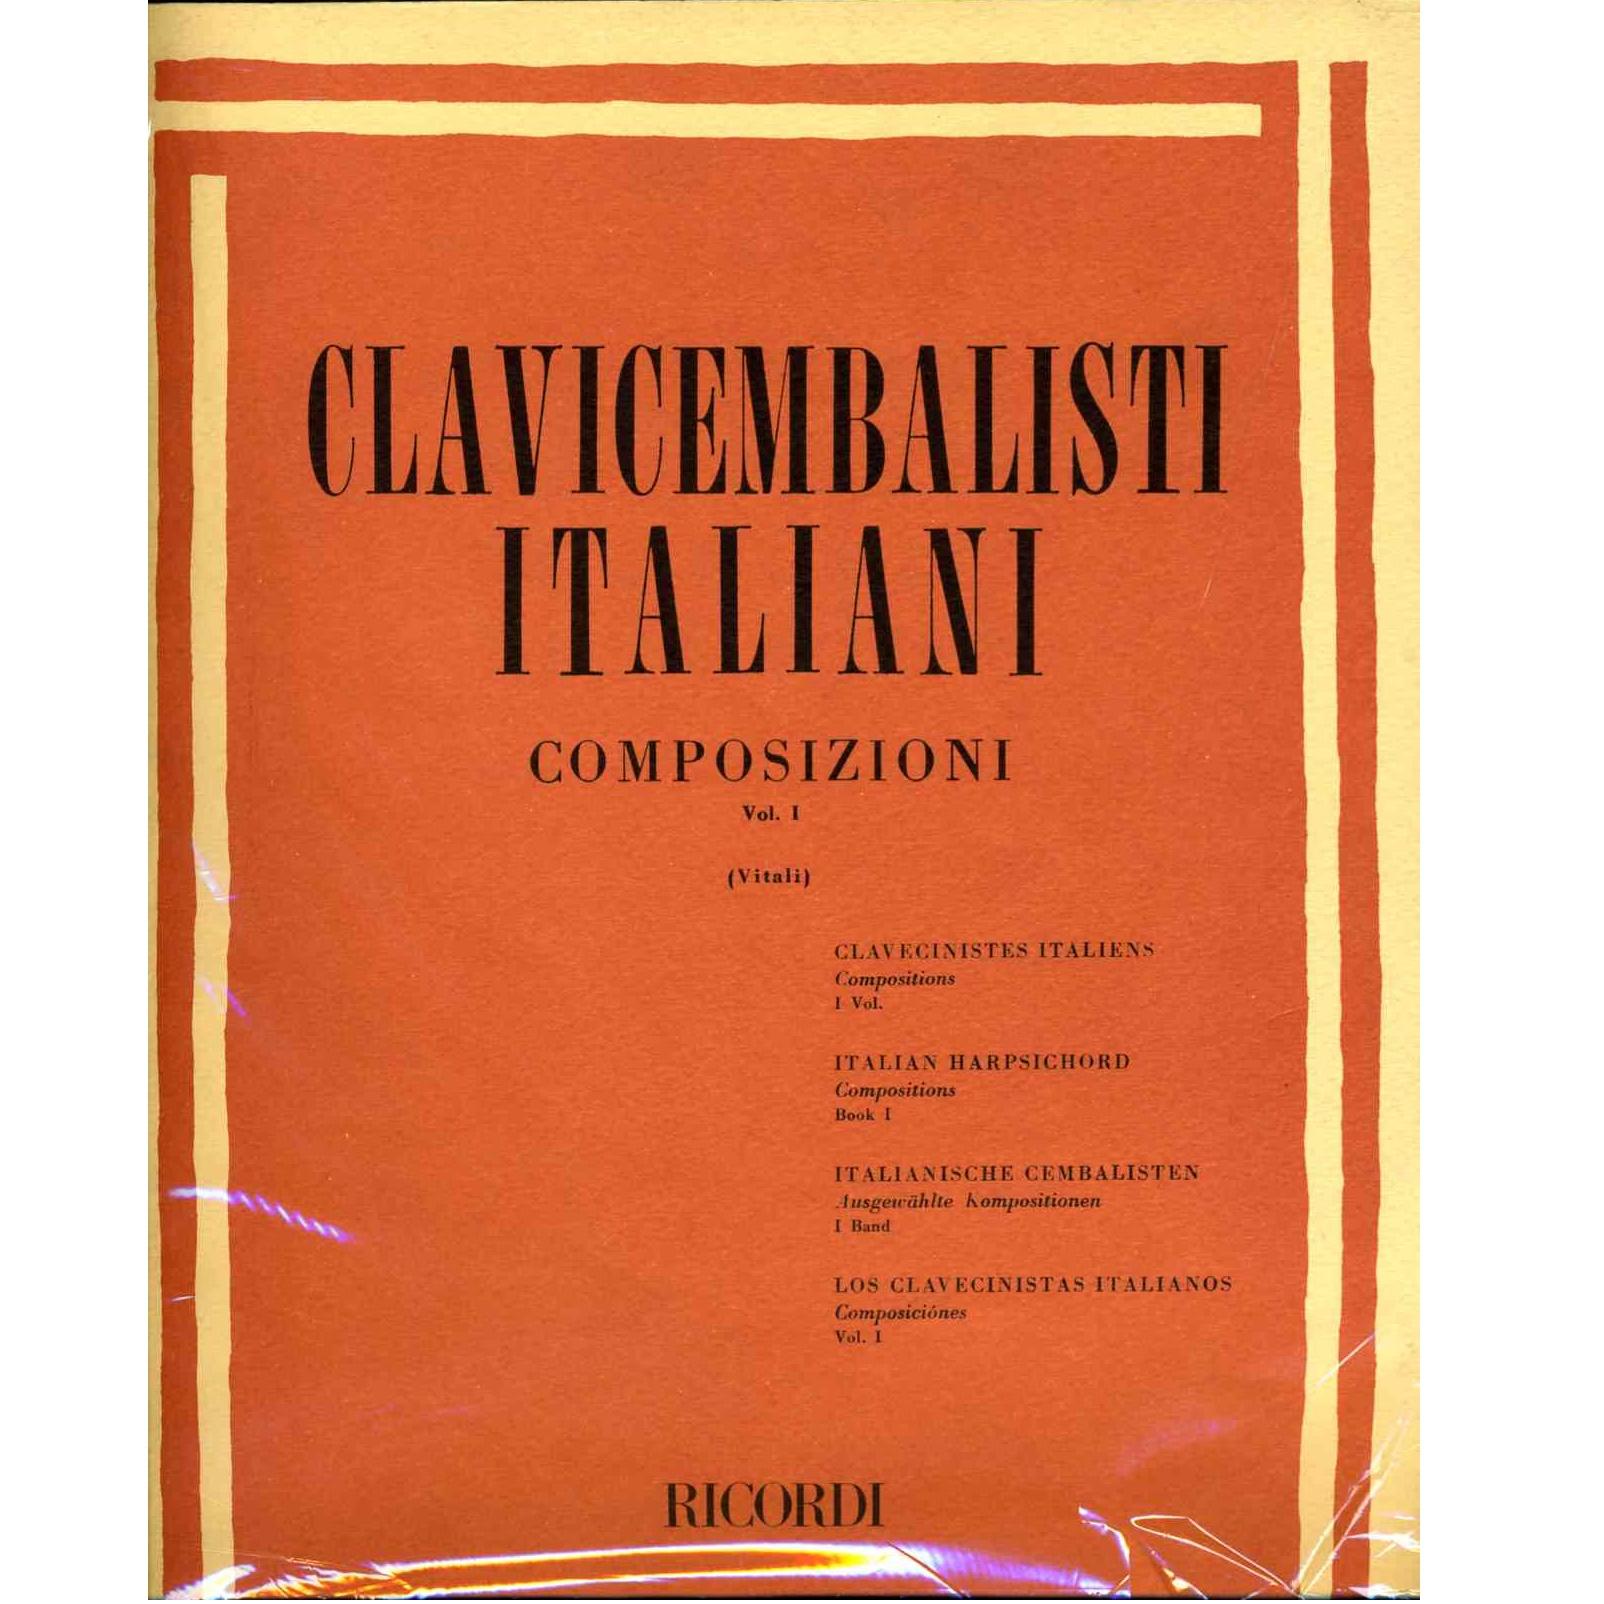 Clavicembalisti Italiani COMPOSIZIONI Vol. 1 (Vitali) - Ricordi